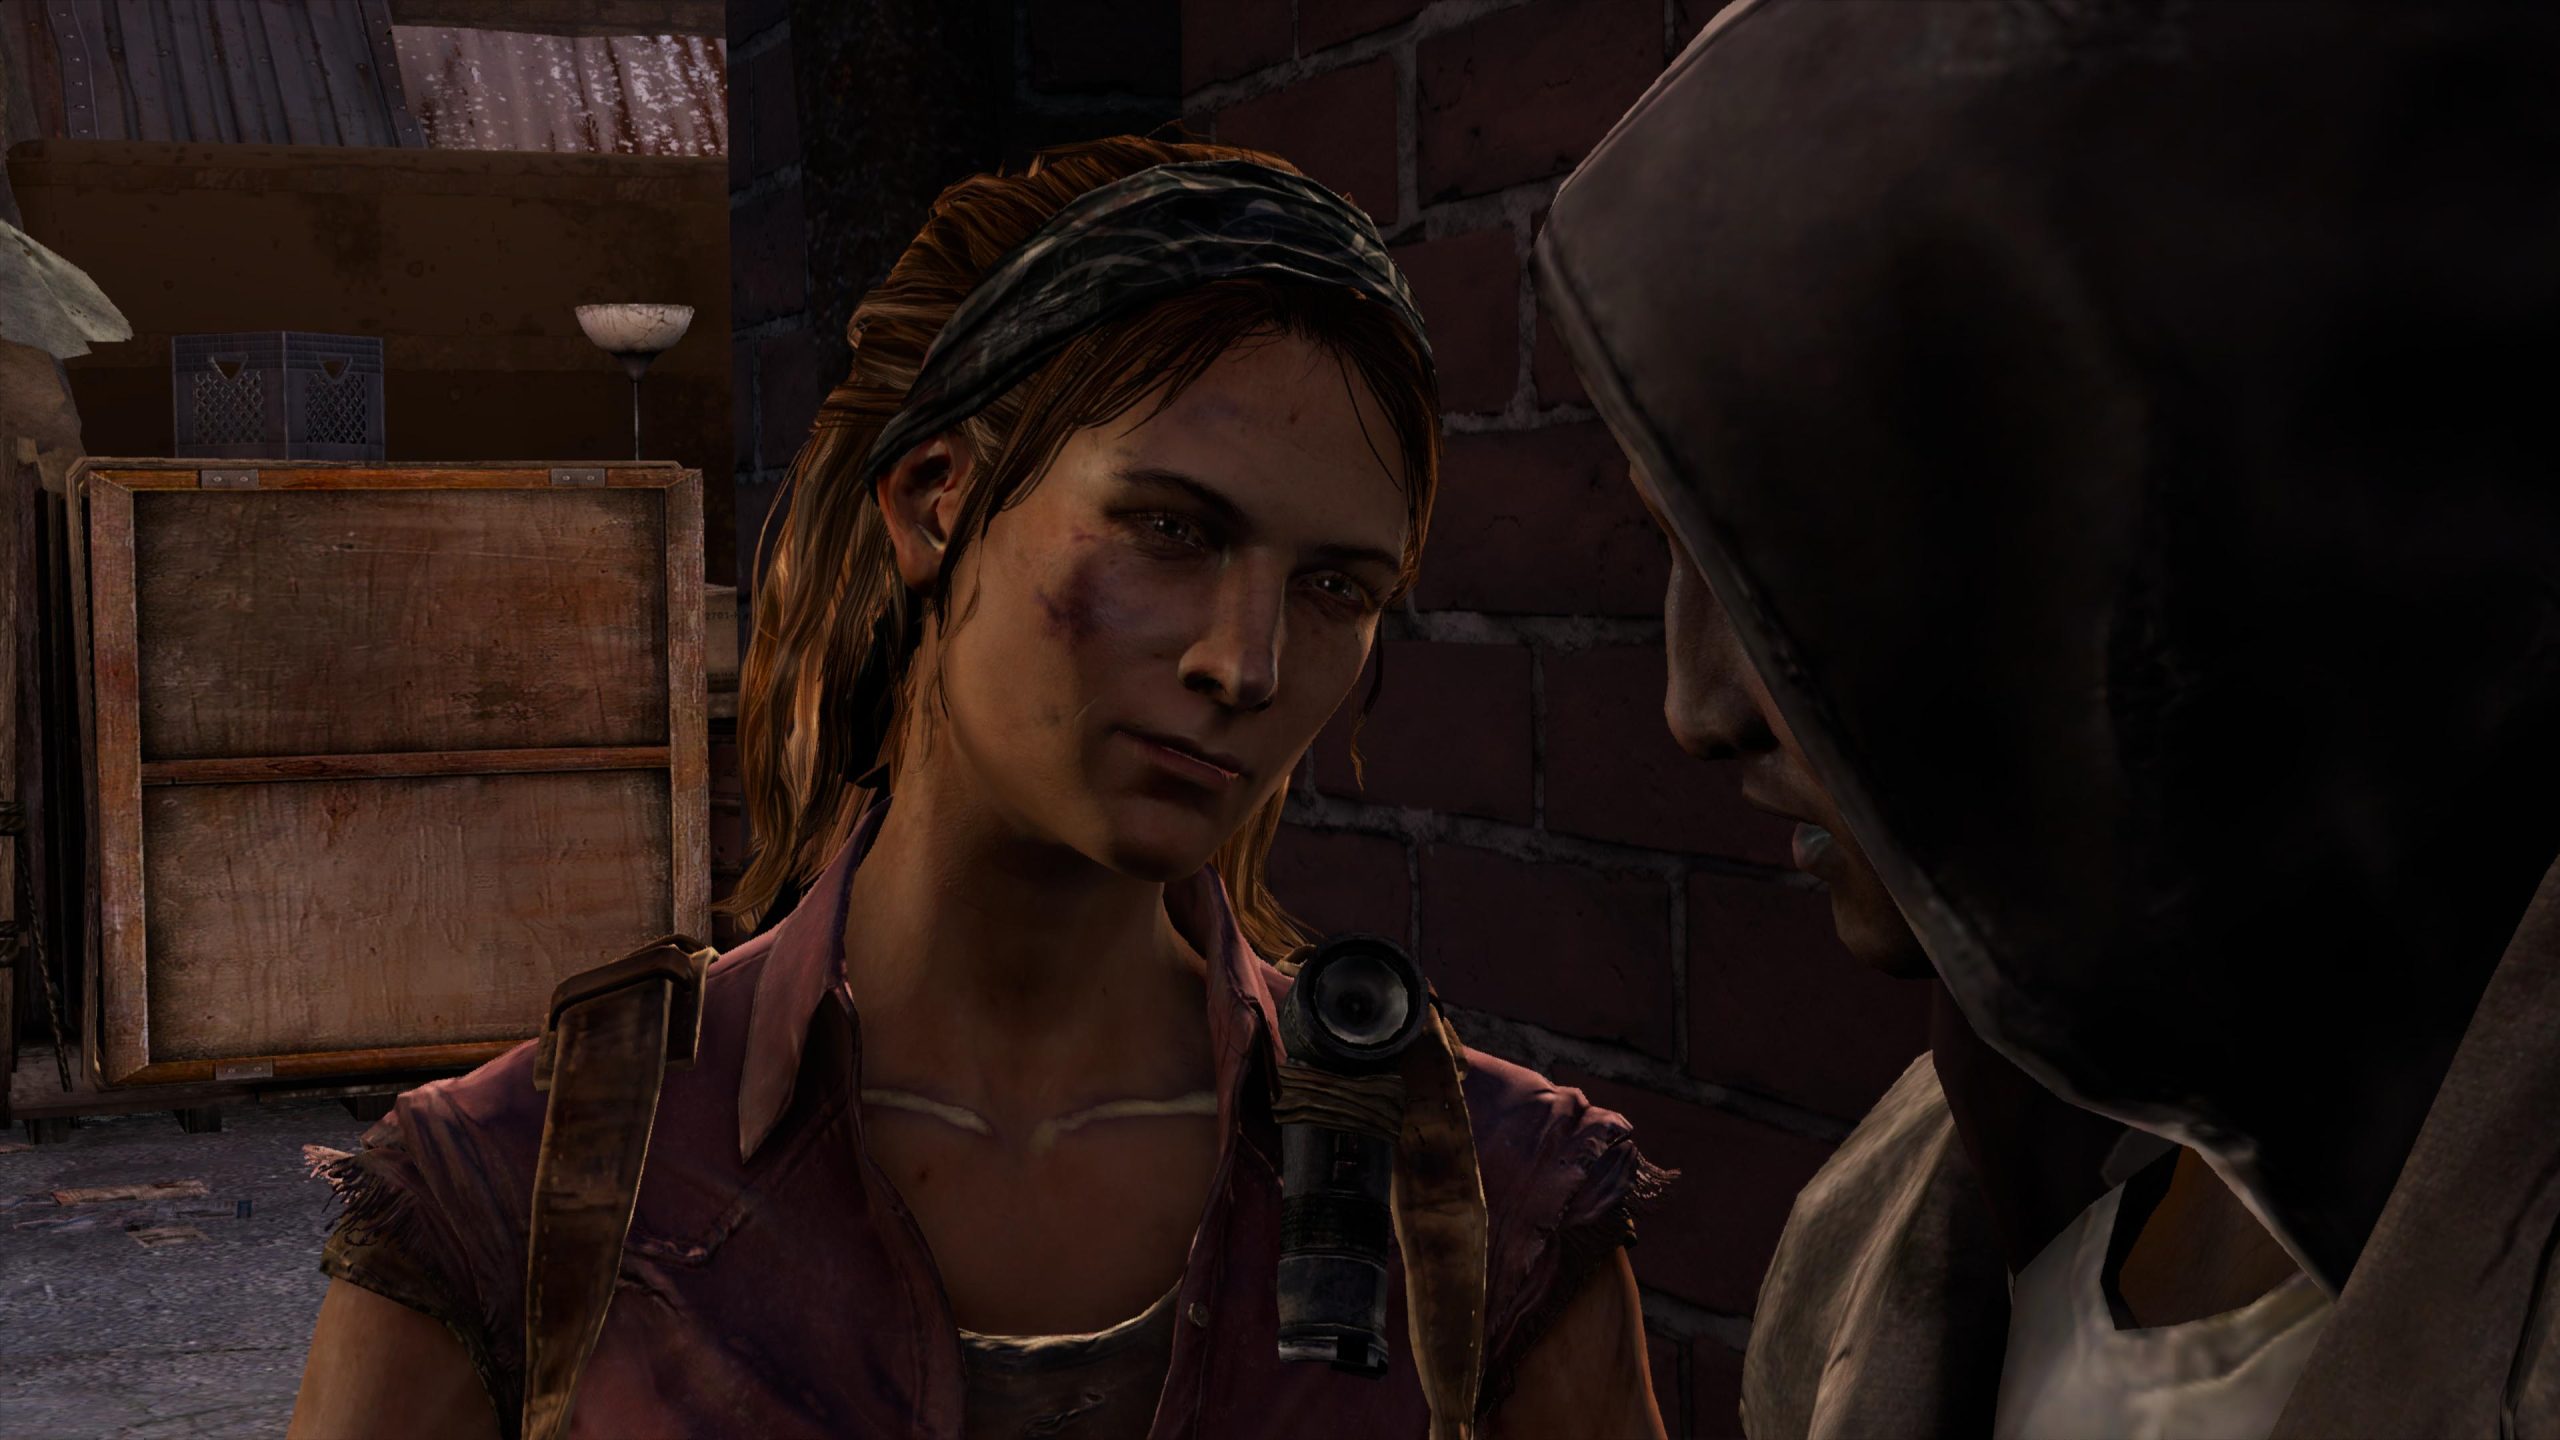 Tomb Raider x The Last of Us: veja a comparação entre os games de aventura